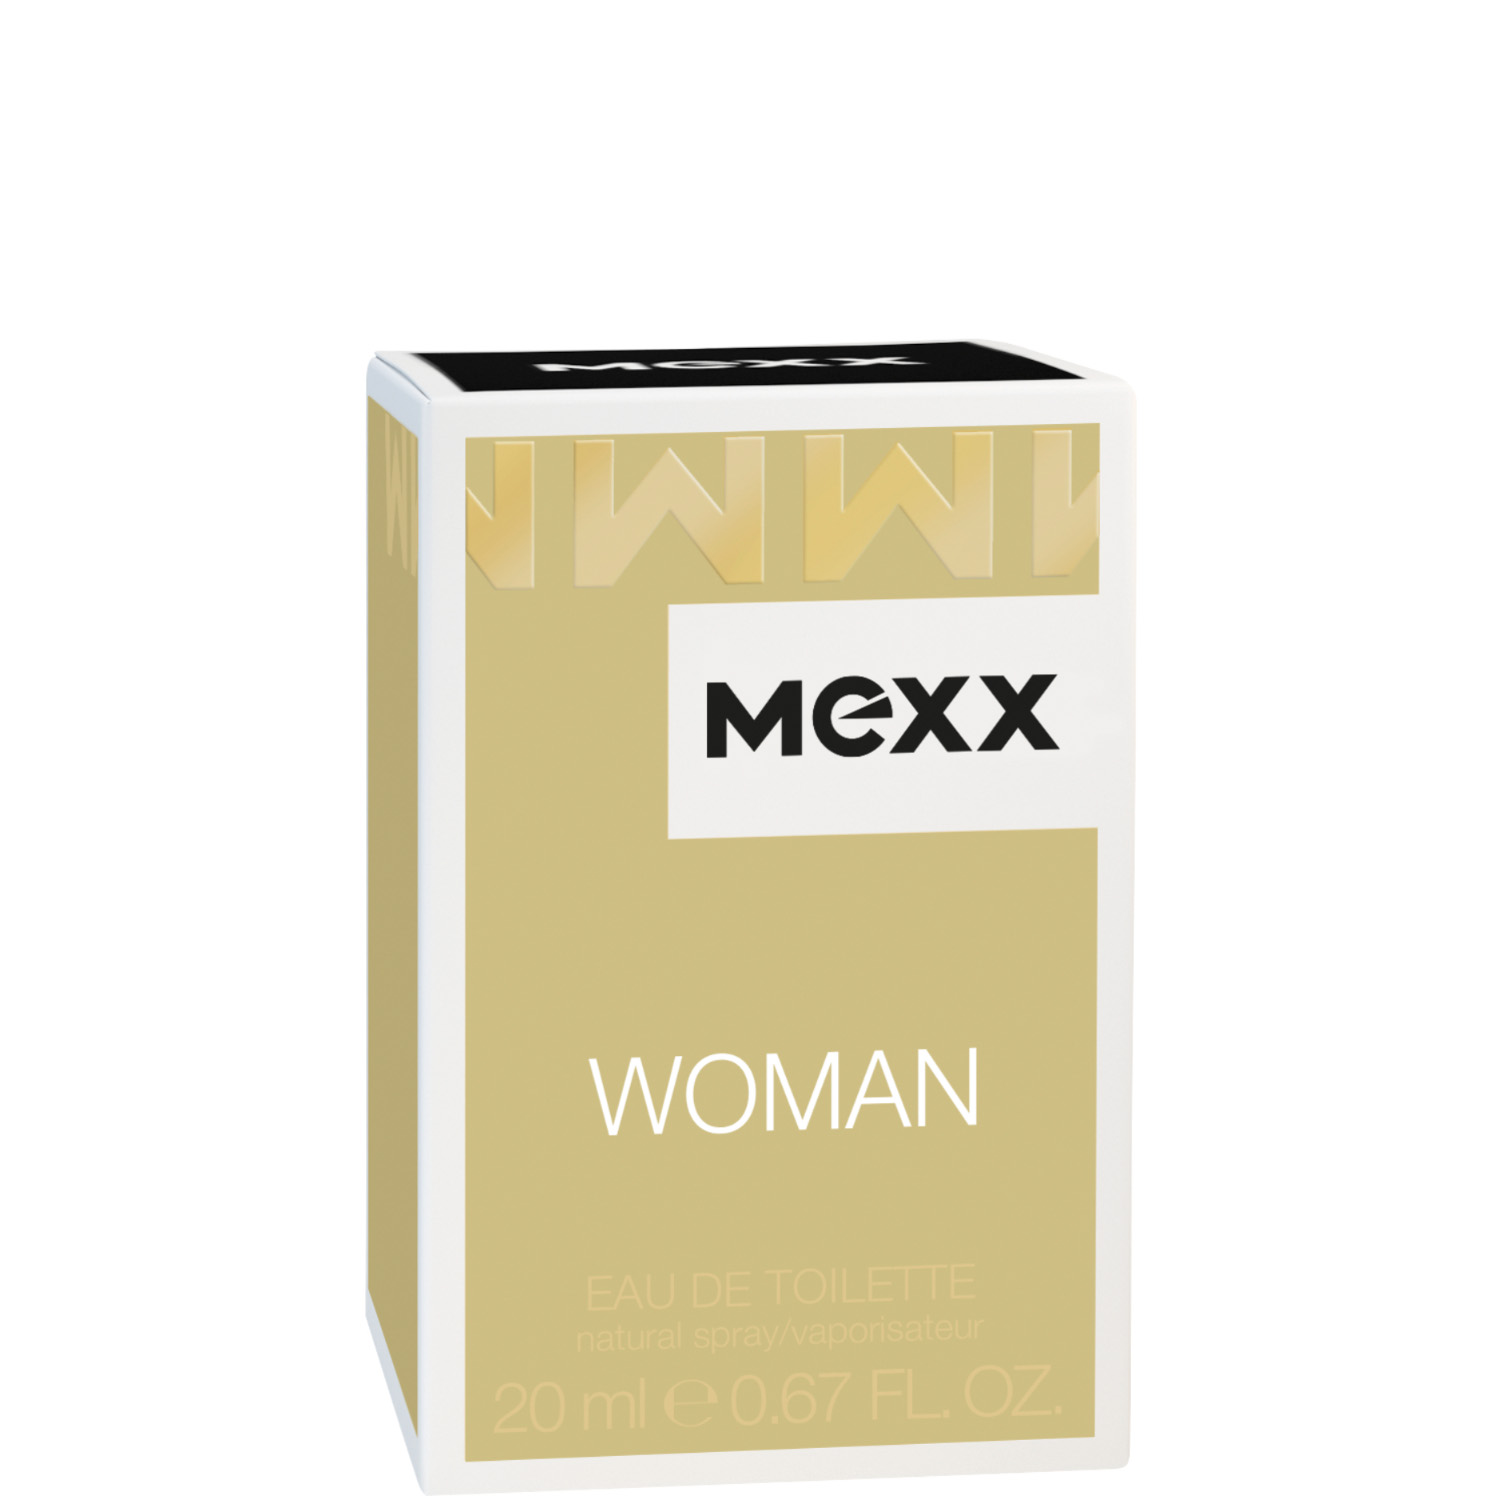 Mexx Woman Eau de Toilette 20ml